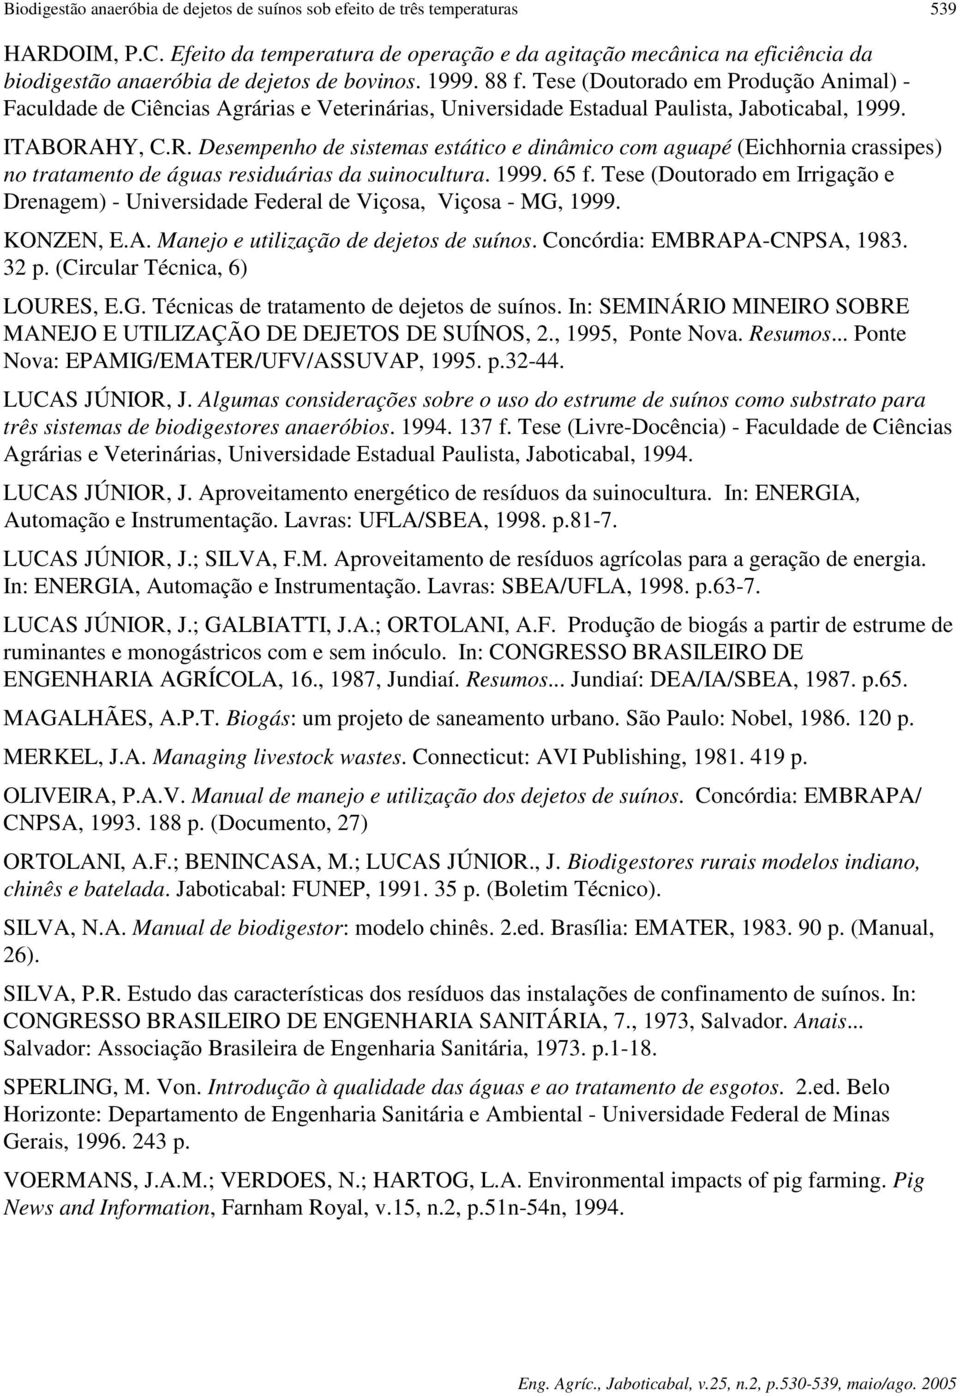 Tese (Doutorado em Produção Animal) - Faculdade de Ciências Agrárias e Veterinárias, Universidade Estadual Paulista, Jaboticabal, 1999. ITABORA